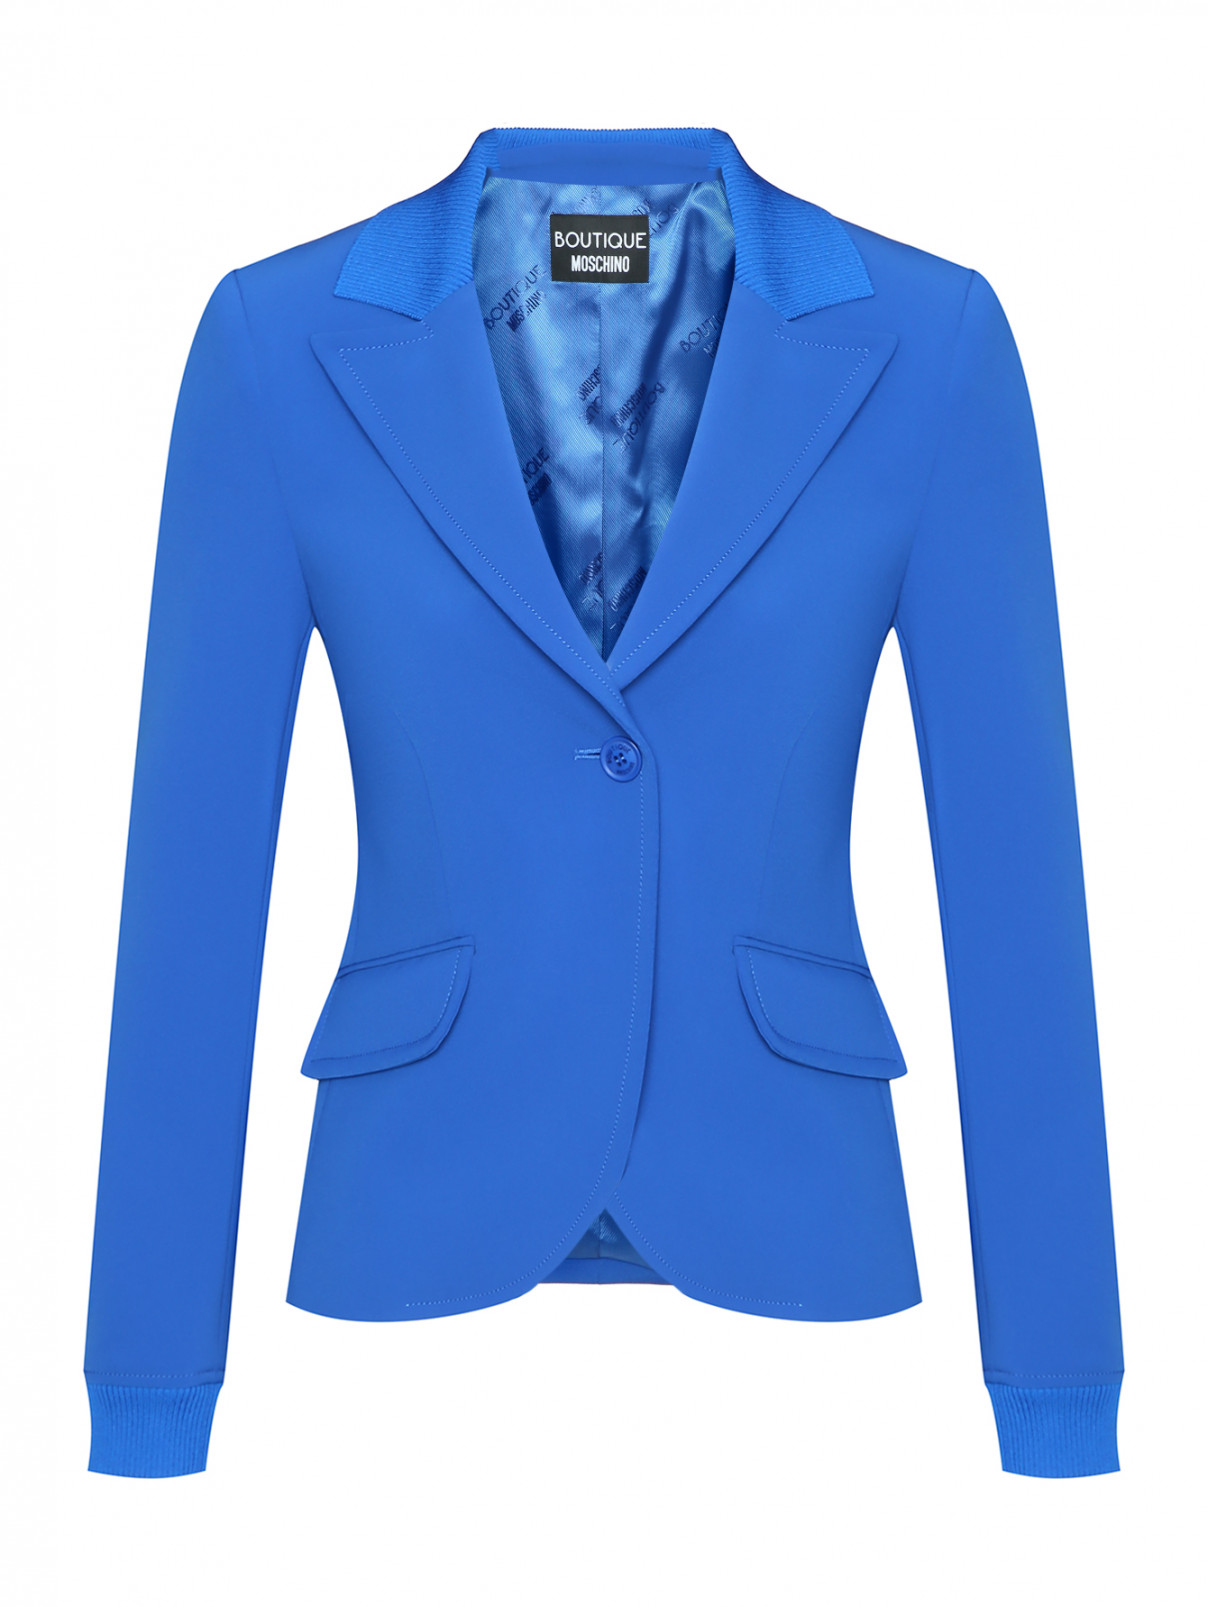 Однобортный жакет с карманами Moschino Boutique  –  Общий вид  – Цвет:  Синий